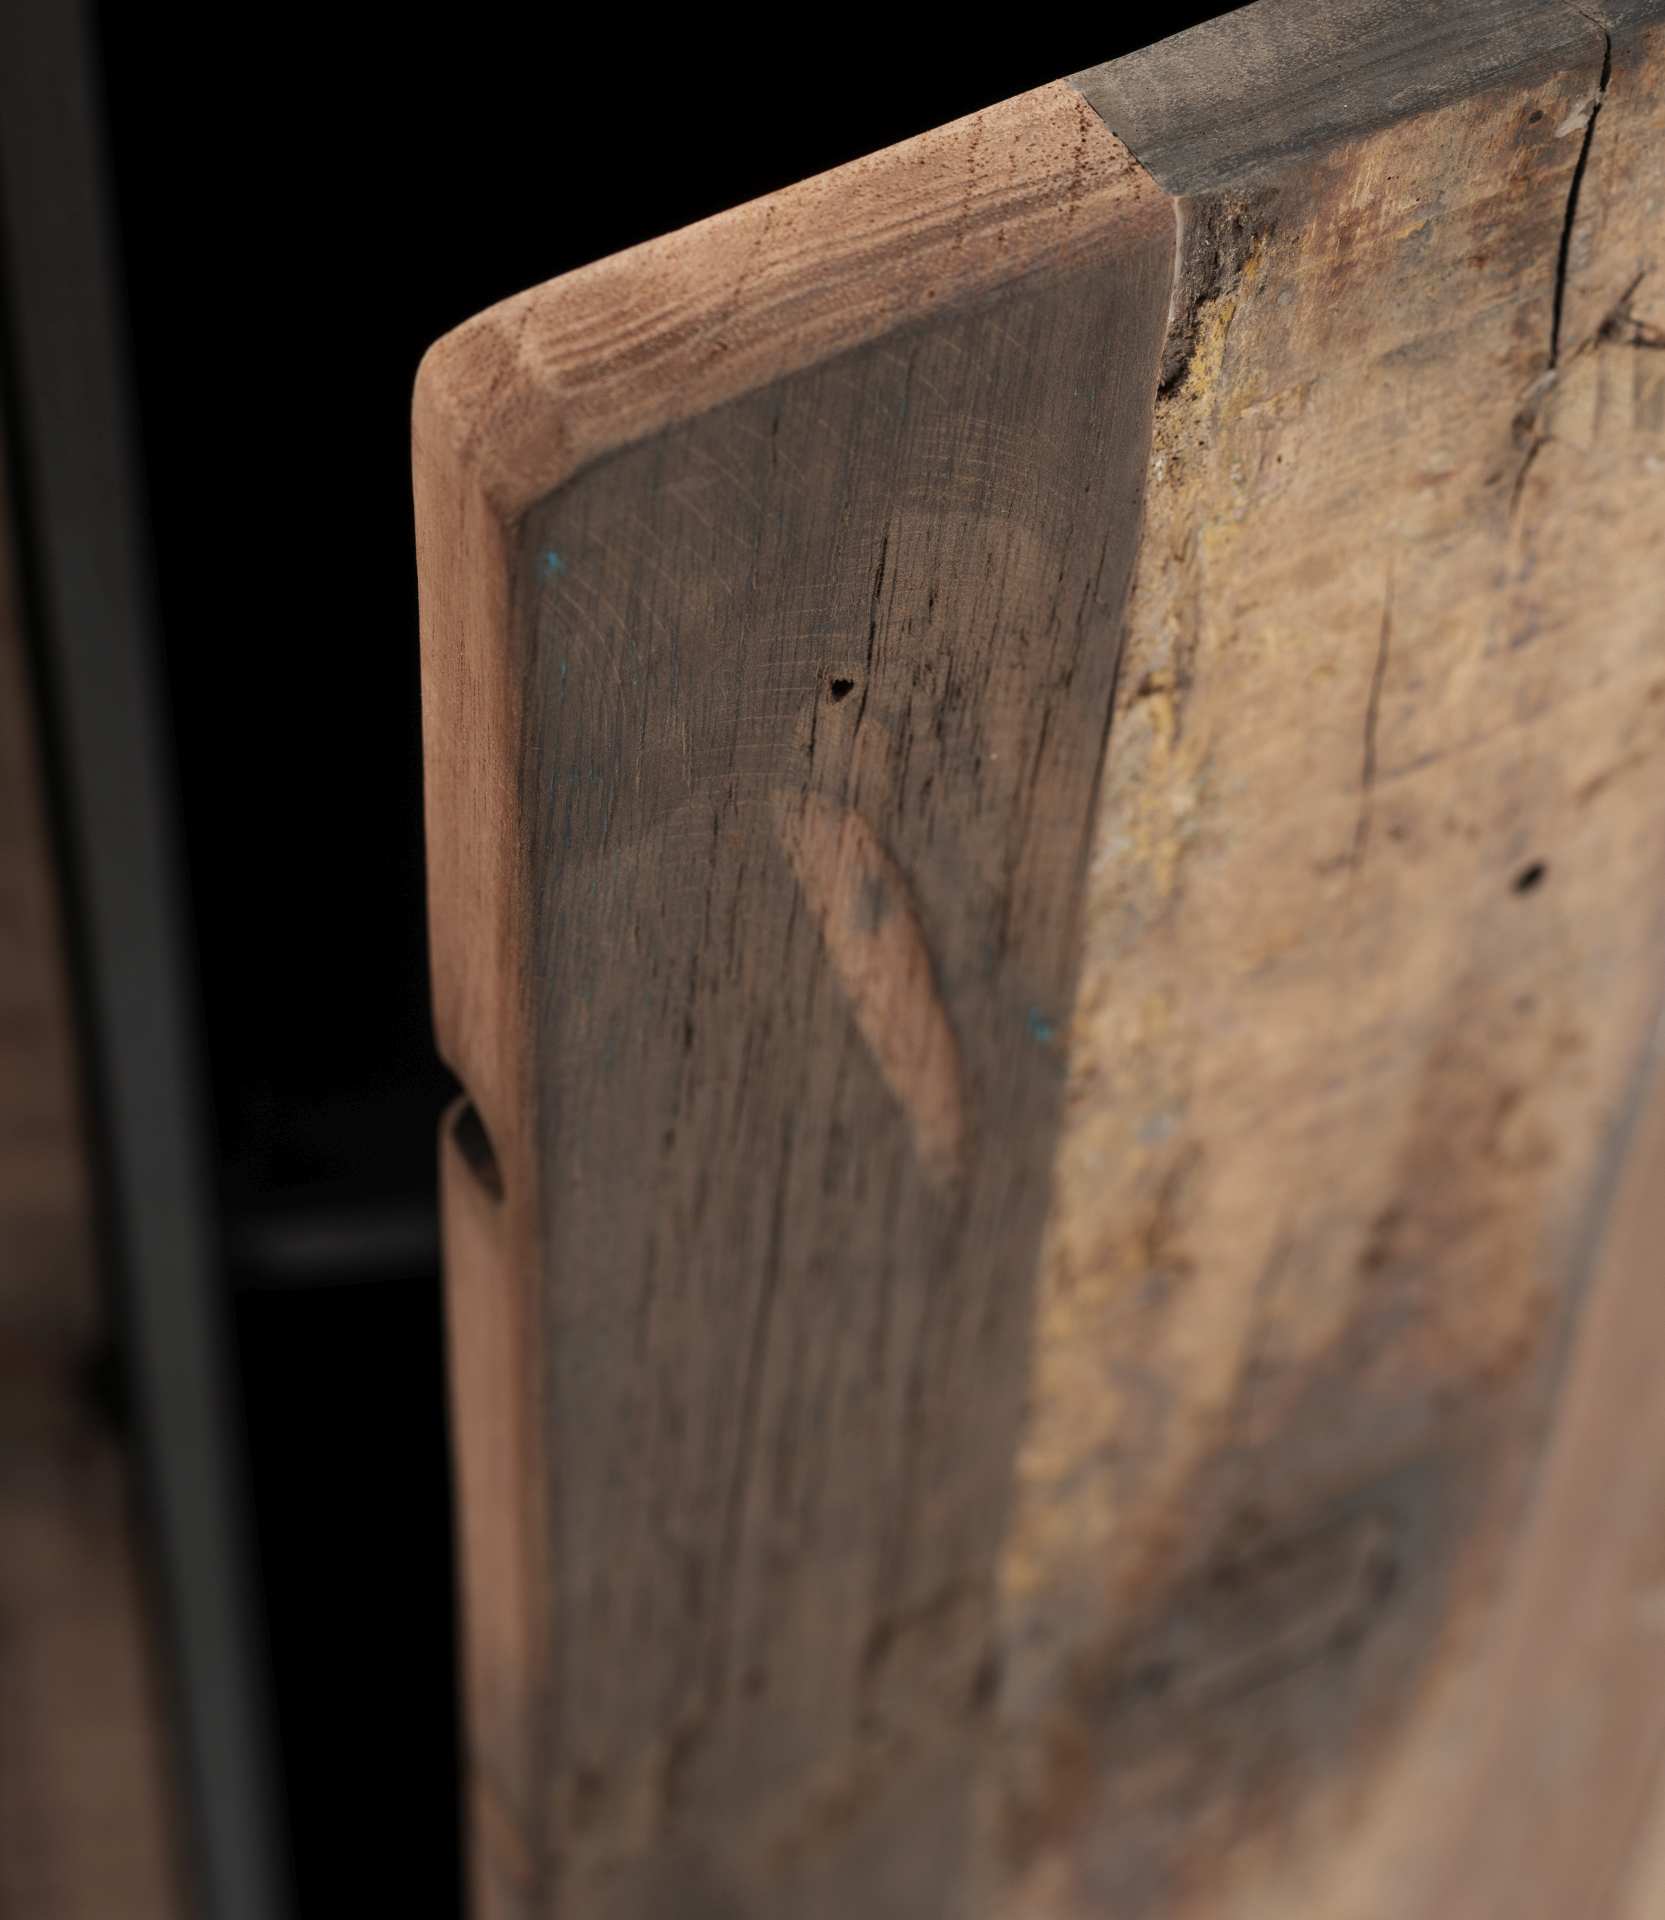 Das Sideboard Rustica überzeugt mit seinem Industriellen Design. Gefertigt wurde es aus einem Mix aus Recyceltem Boots Holz und Mindi Holz, welches einen schwarzen und natürlichen Farbton besitzt. Das Gestell ist aus Metall und hat eine schwarze Farbe. Da